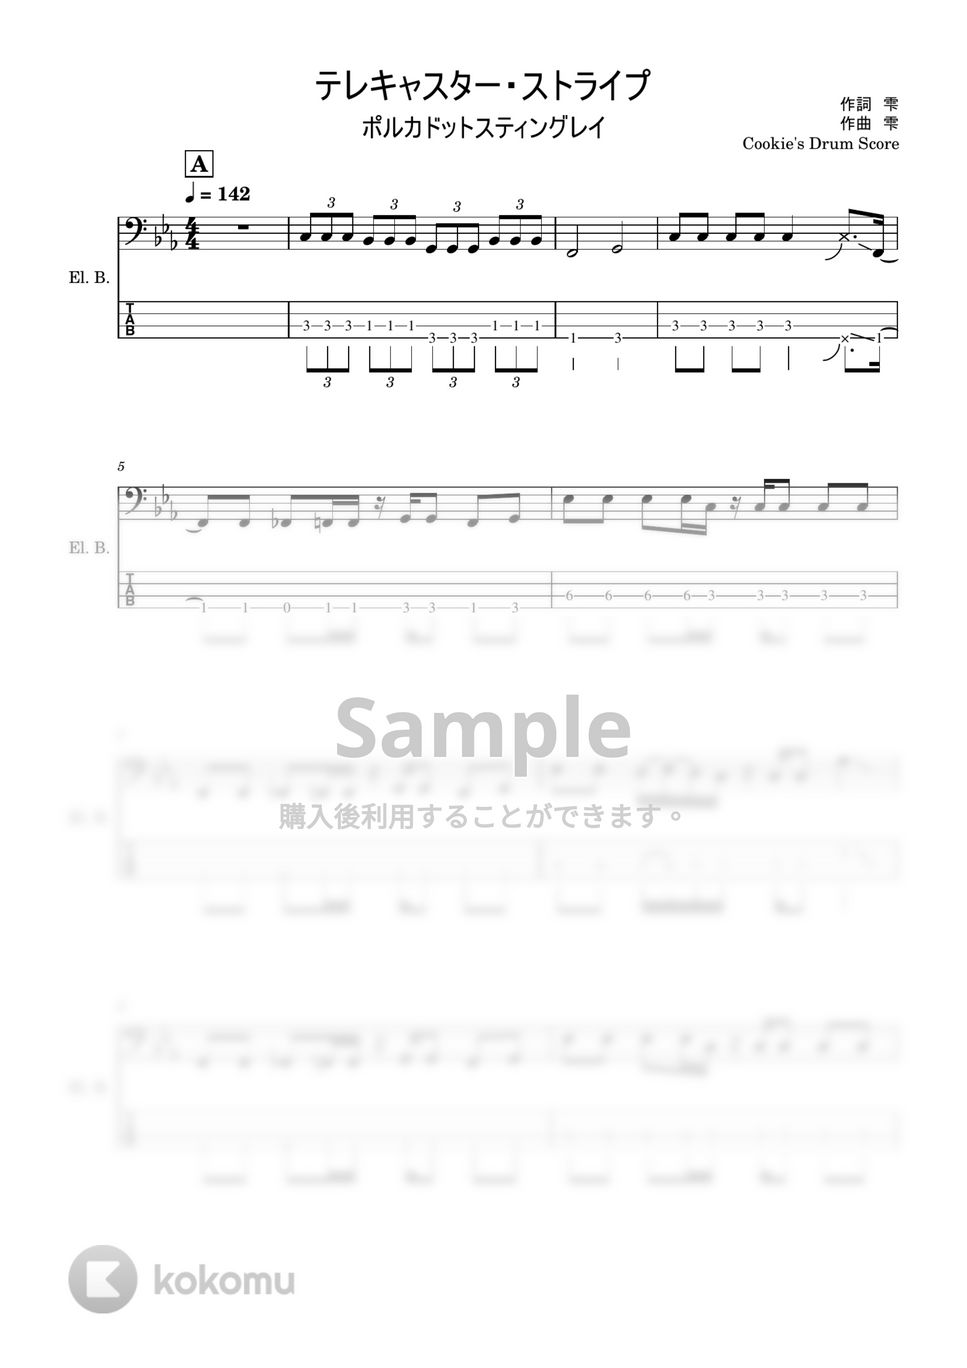 ポルカドットスティングレイ - 【ベース楽譜】 テレキャスター・ストライプ / ポルカドットスティングレイ - Telecaster Stripe / Polkadot Stingray 【BassScore】 by Cookie's Drum Score